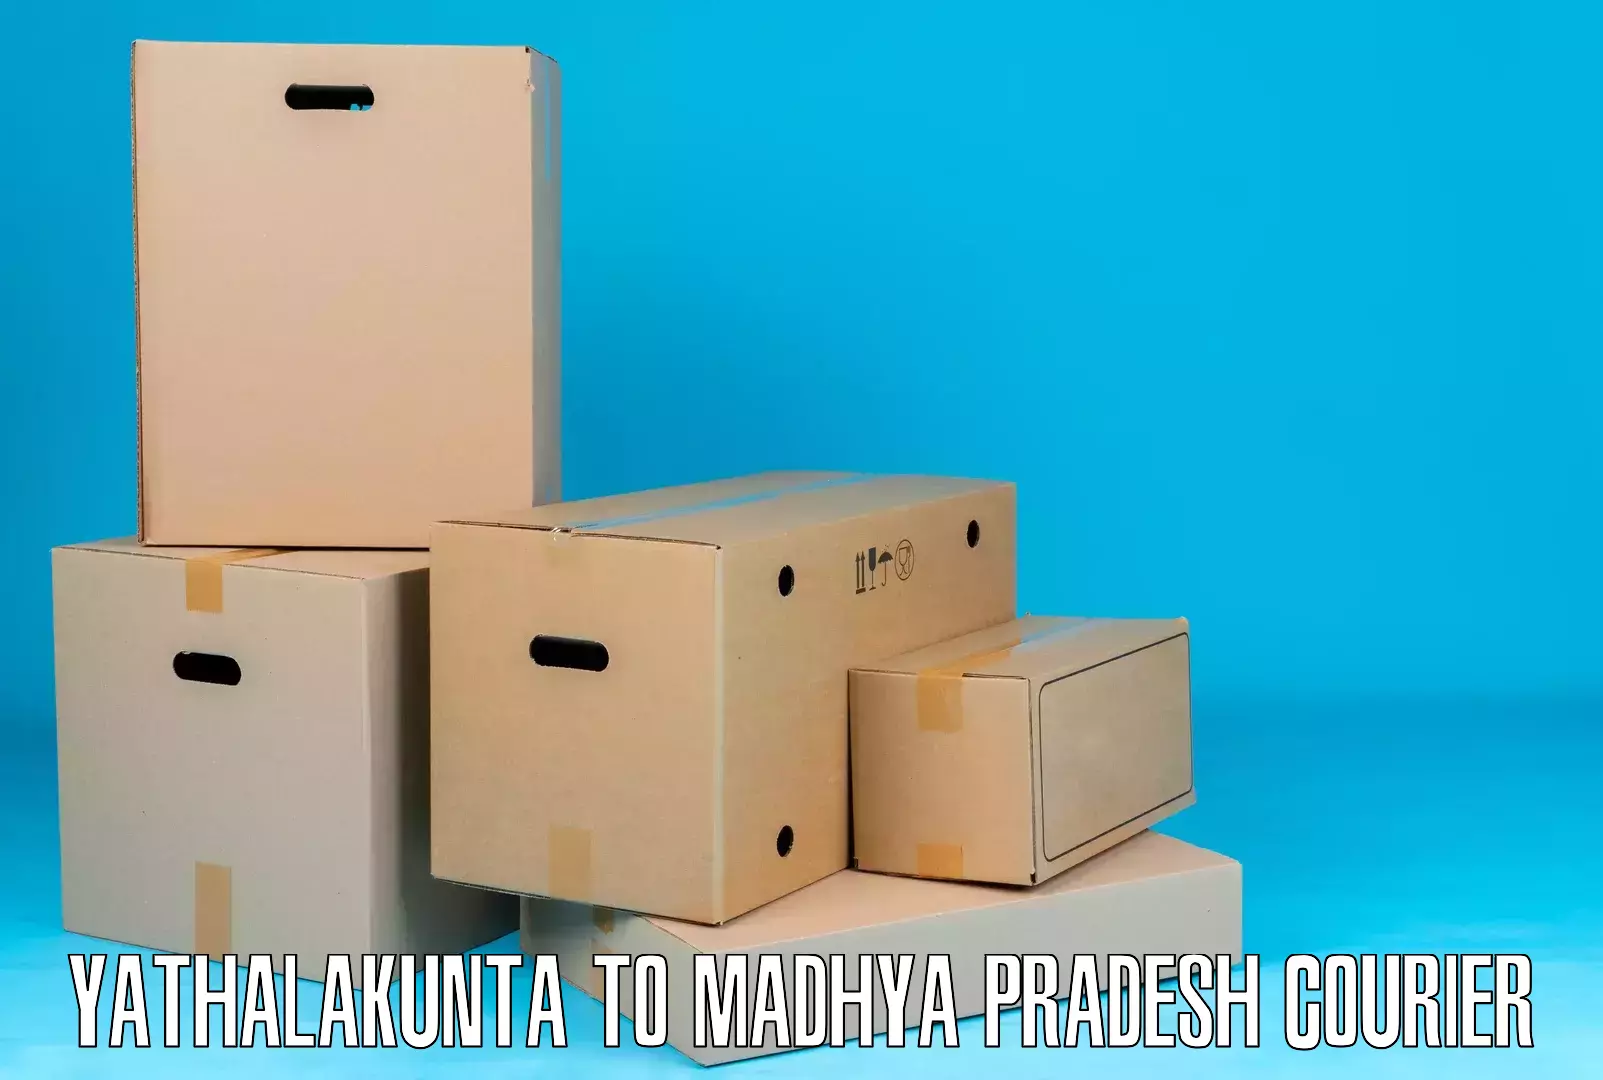 Budget-friendly shipping Yathalakunta to Sehore